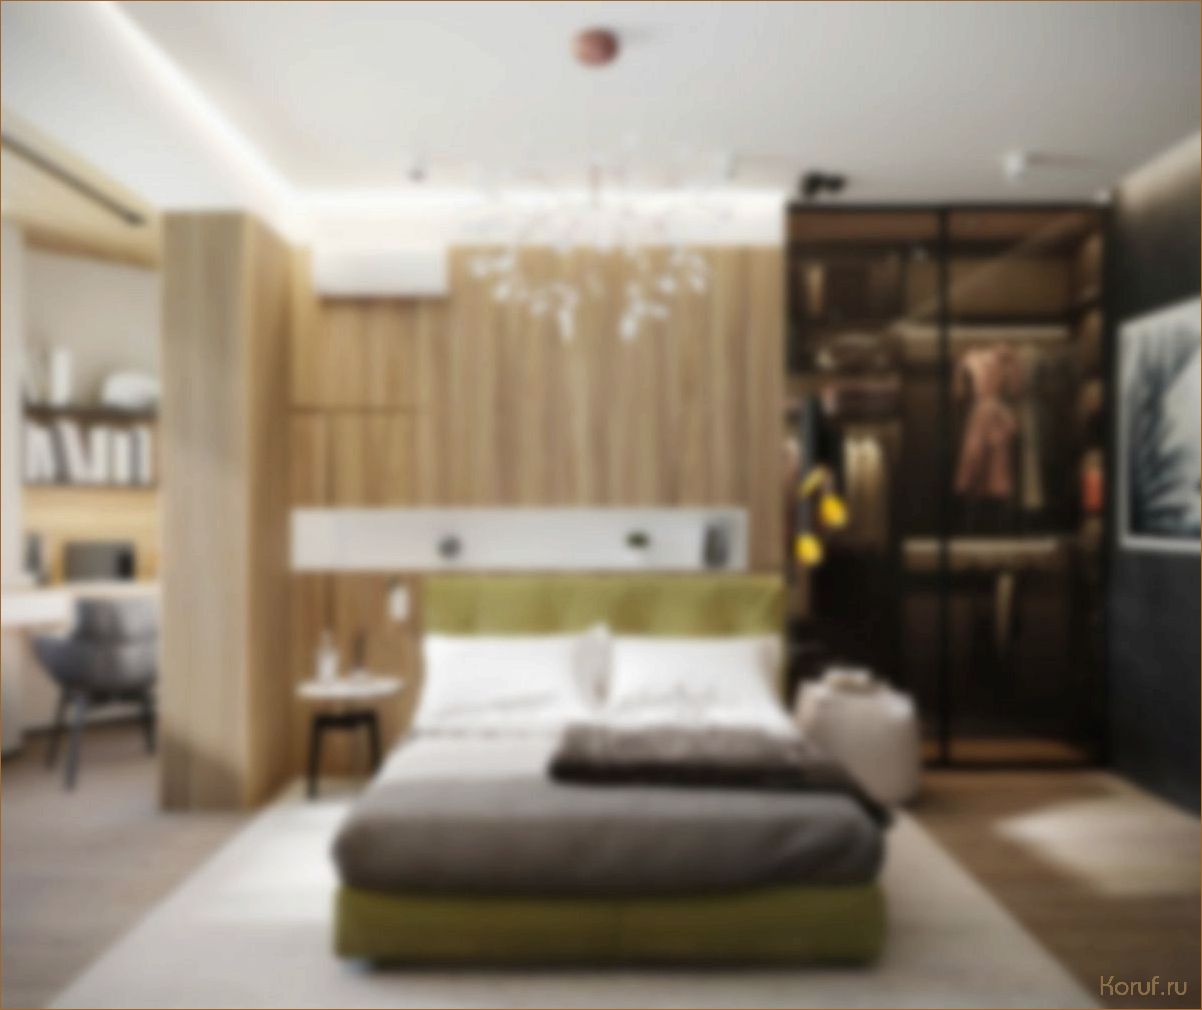 Превратите пространство в спальне 18 м? с гардеробной в элегантный дизайн: идеи и советы